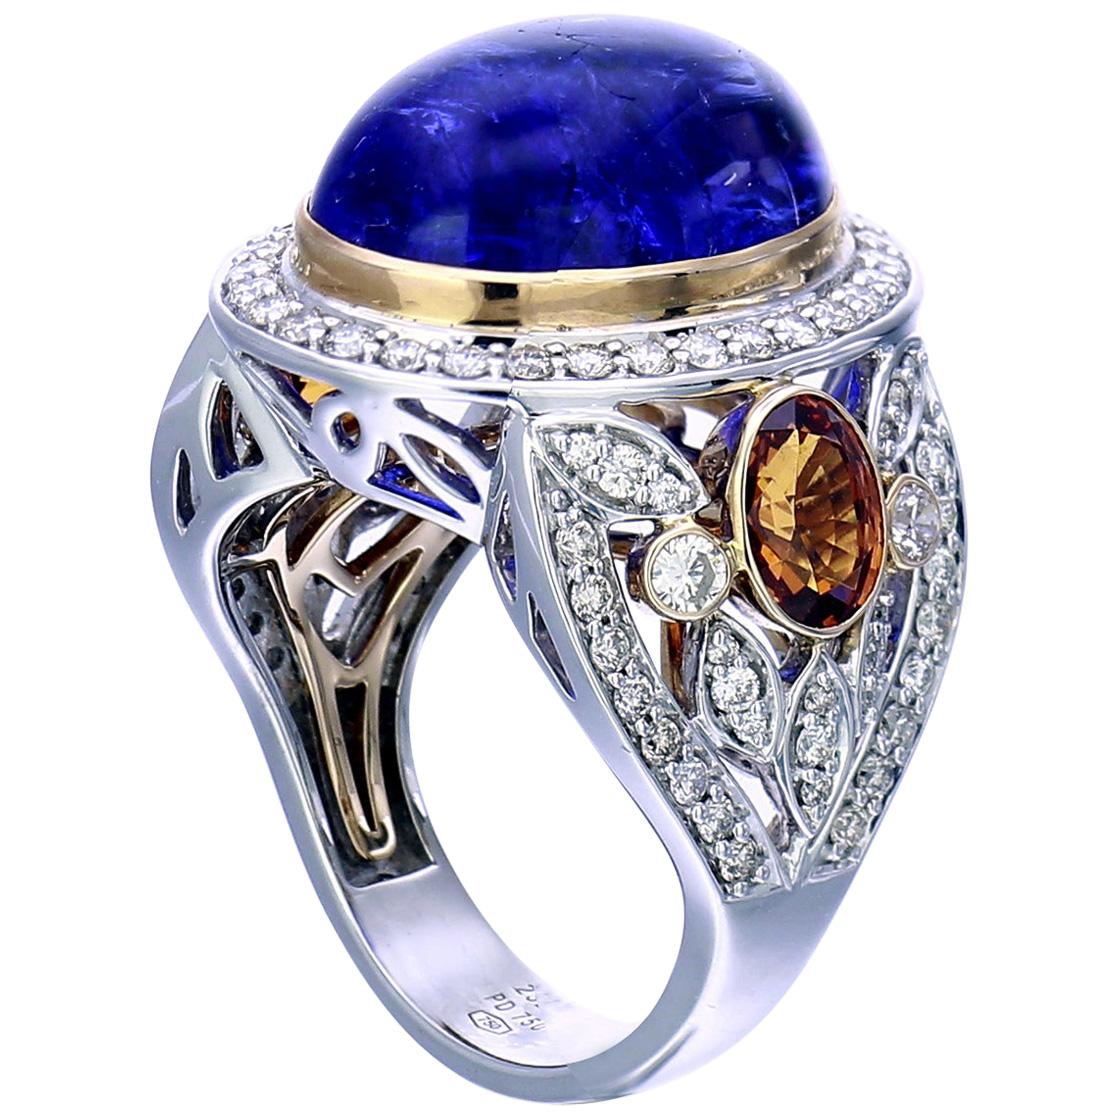 Zorab Kreation, Blauer Vogel 15 Karat Tansanit, Diamant und Spessartit Granat Ring